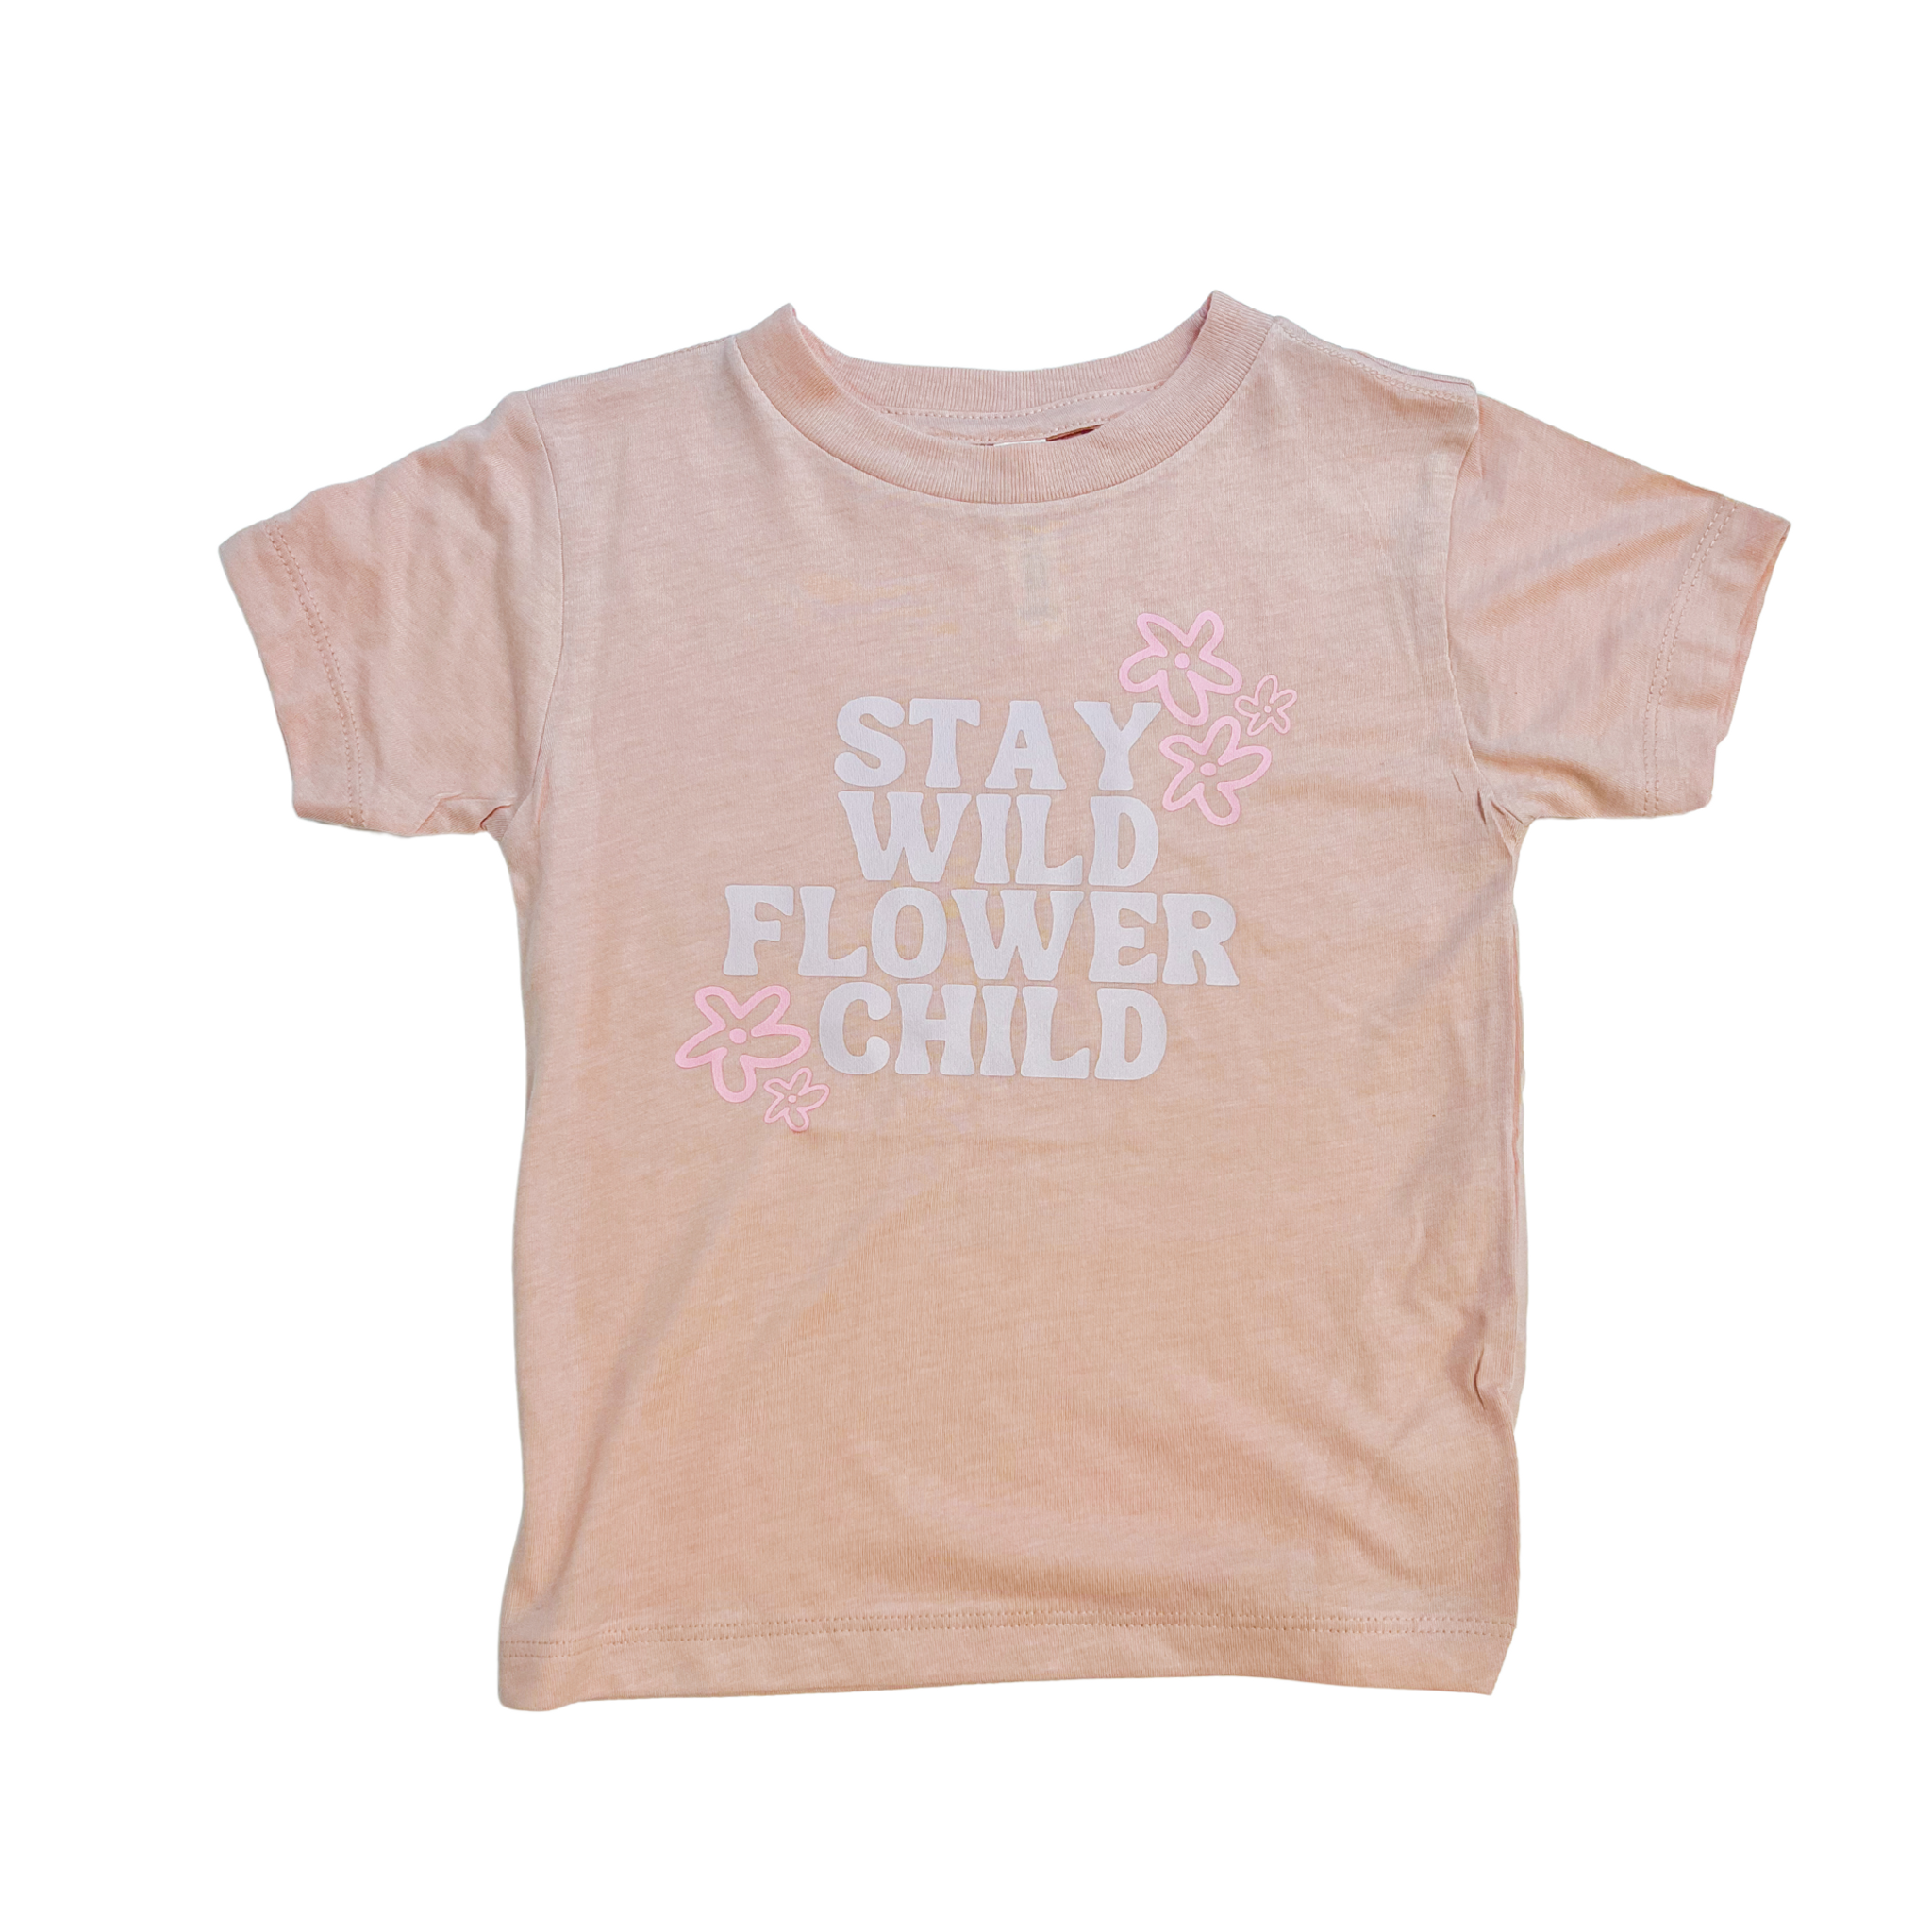 Stay Wild Flower Child Toddler Tee